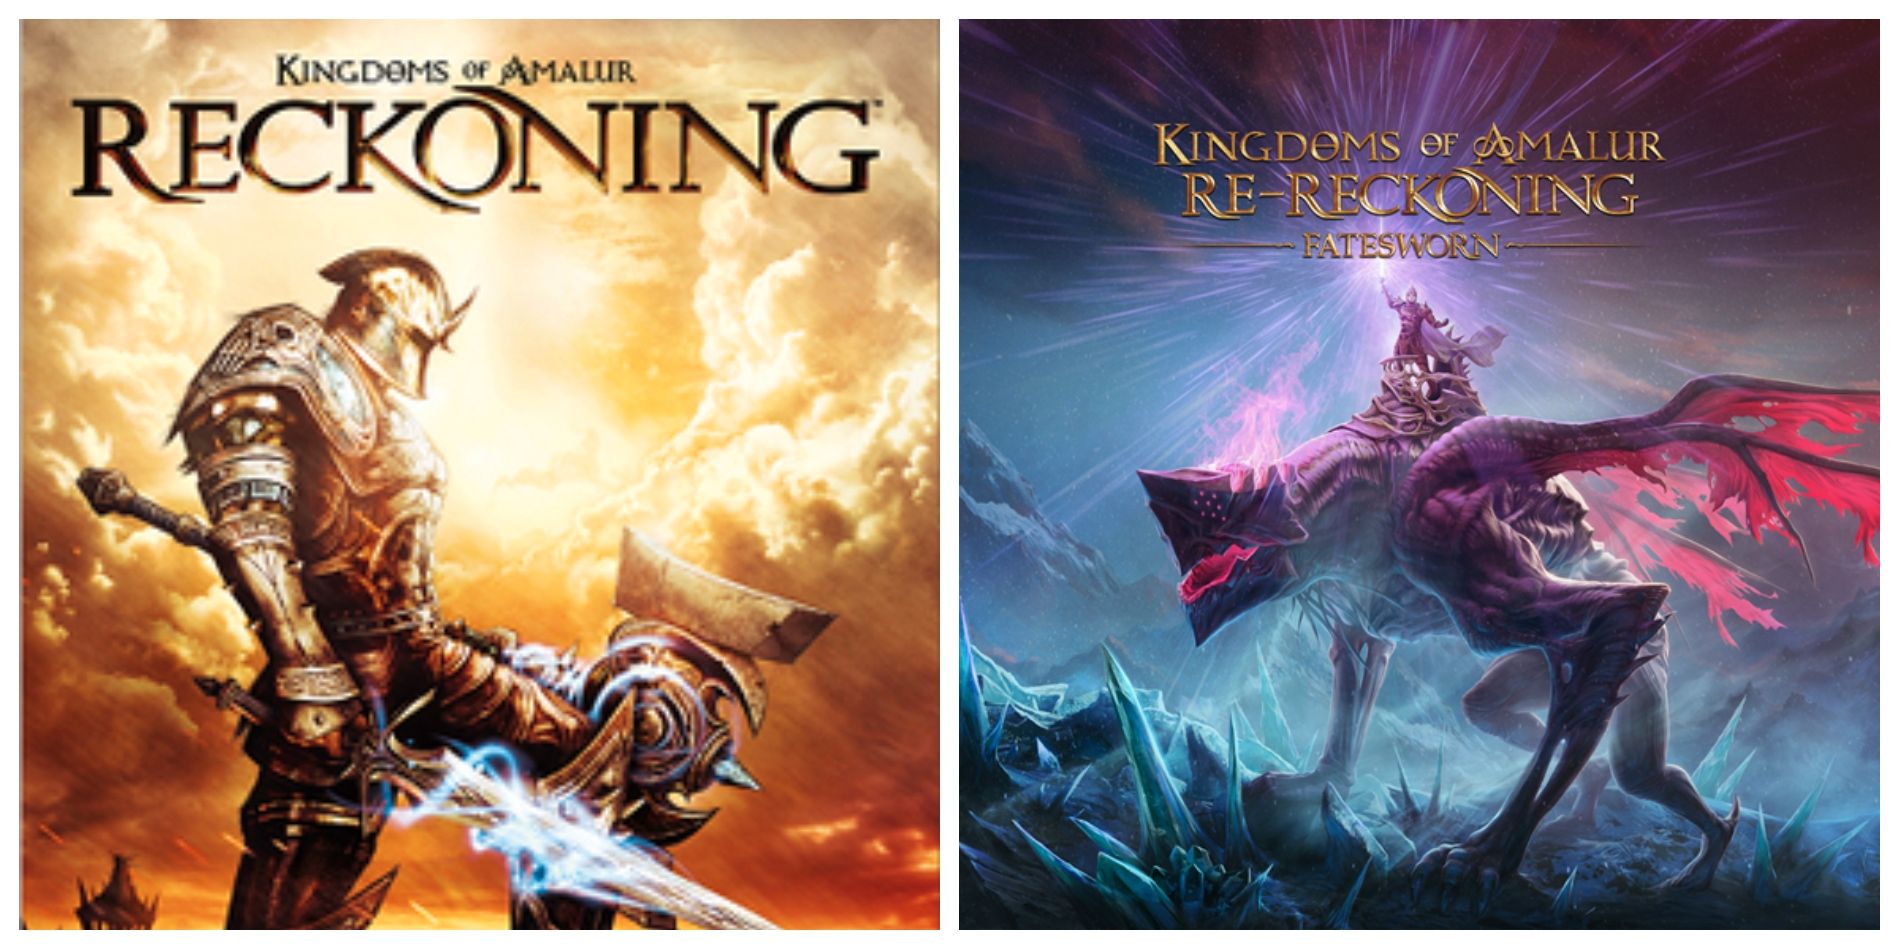 Kingdoms Of Amalur: Re-Reckoning’s Fatesworn DLC podría insinuar una secuela